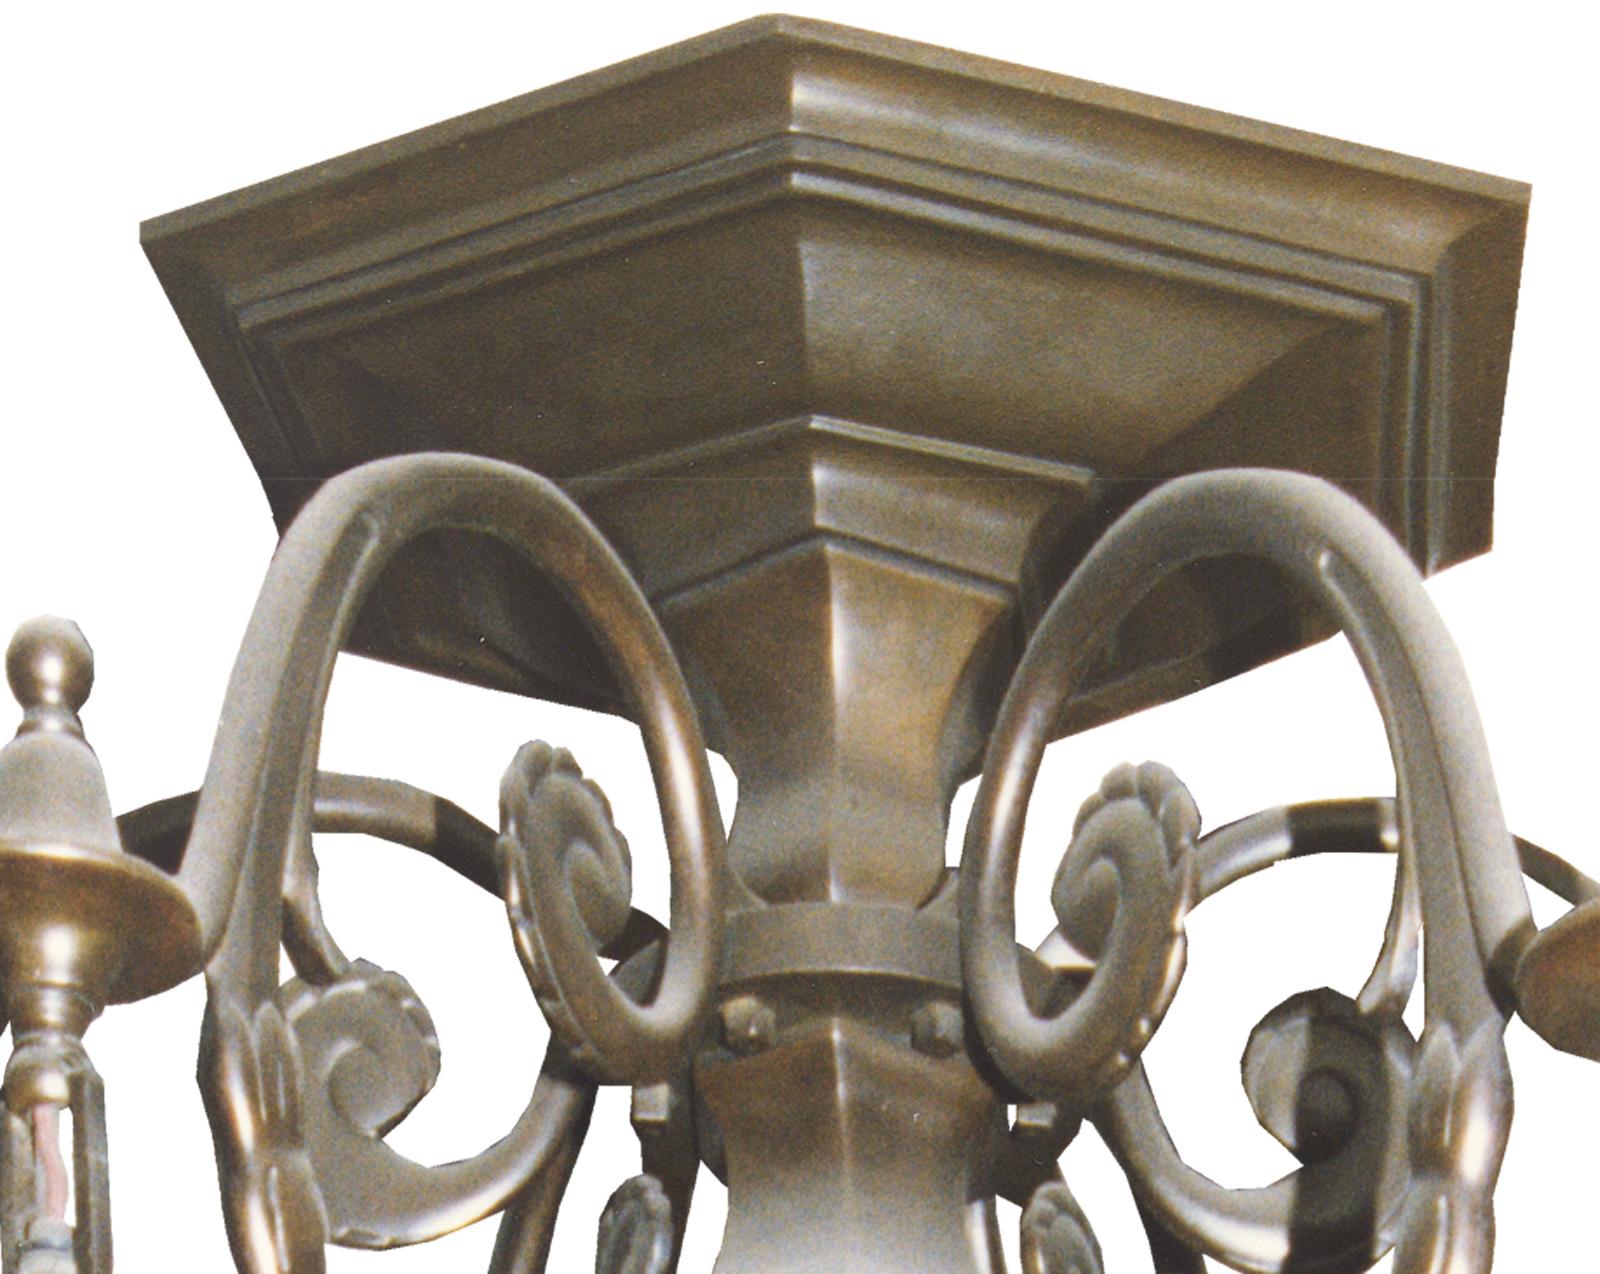 Reich verzierter österreichischer Art Deco Bronzelüster mit Fabelwesen. Gegossene und geschmiedete Teile sind zu einem sehr ungewöhnlichen und sehr seltenen Kunstwerk vereint. Sechs Flammen.
Dieser Kronleuchter ist in perfektem Zustand und für die